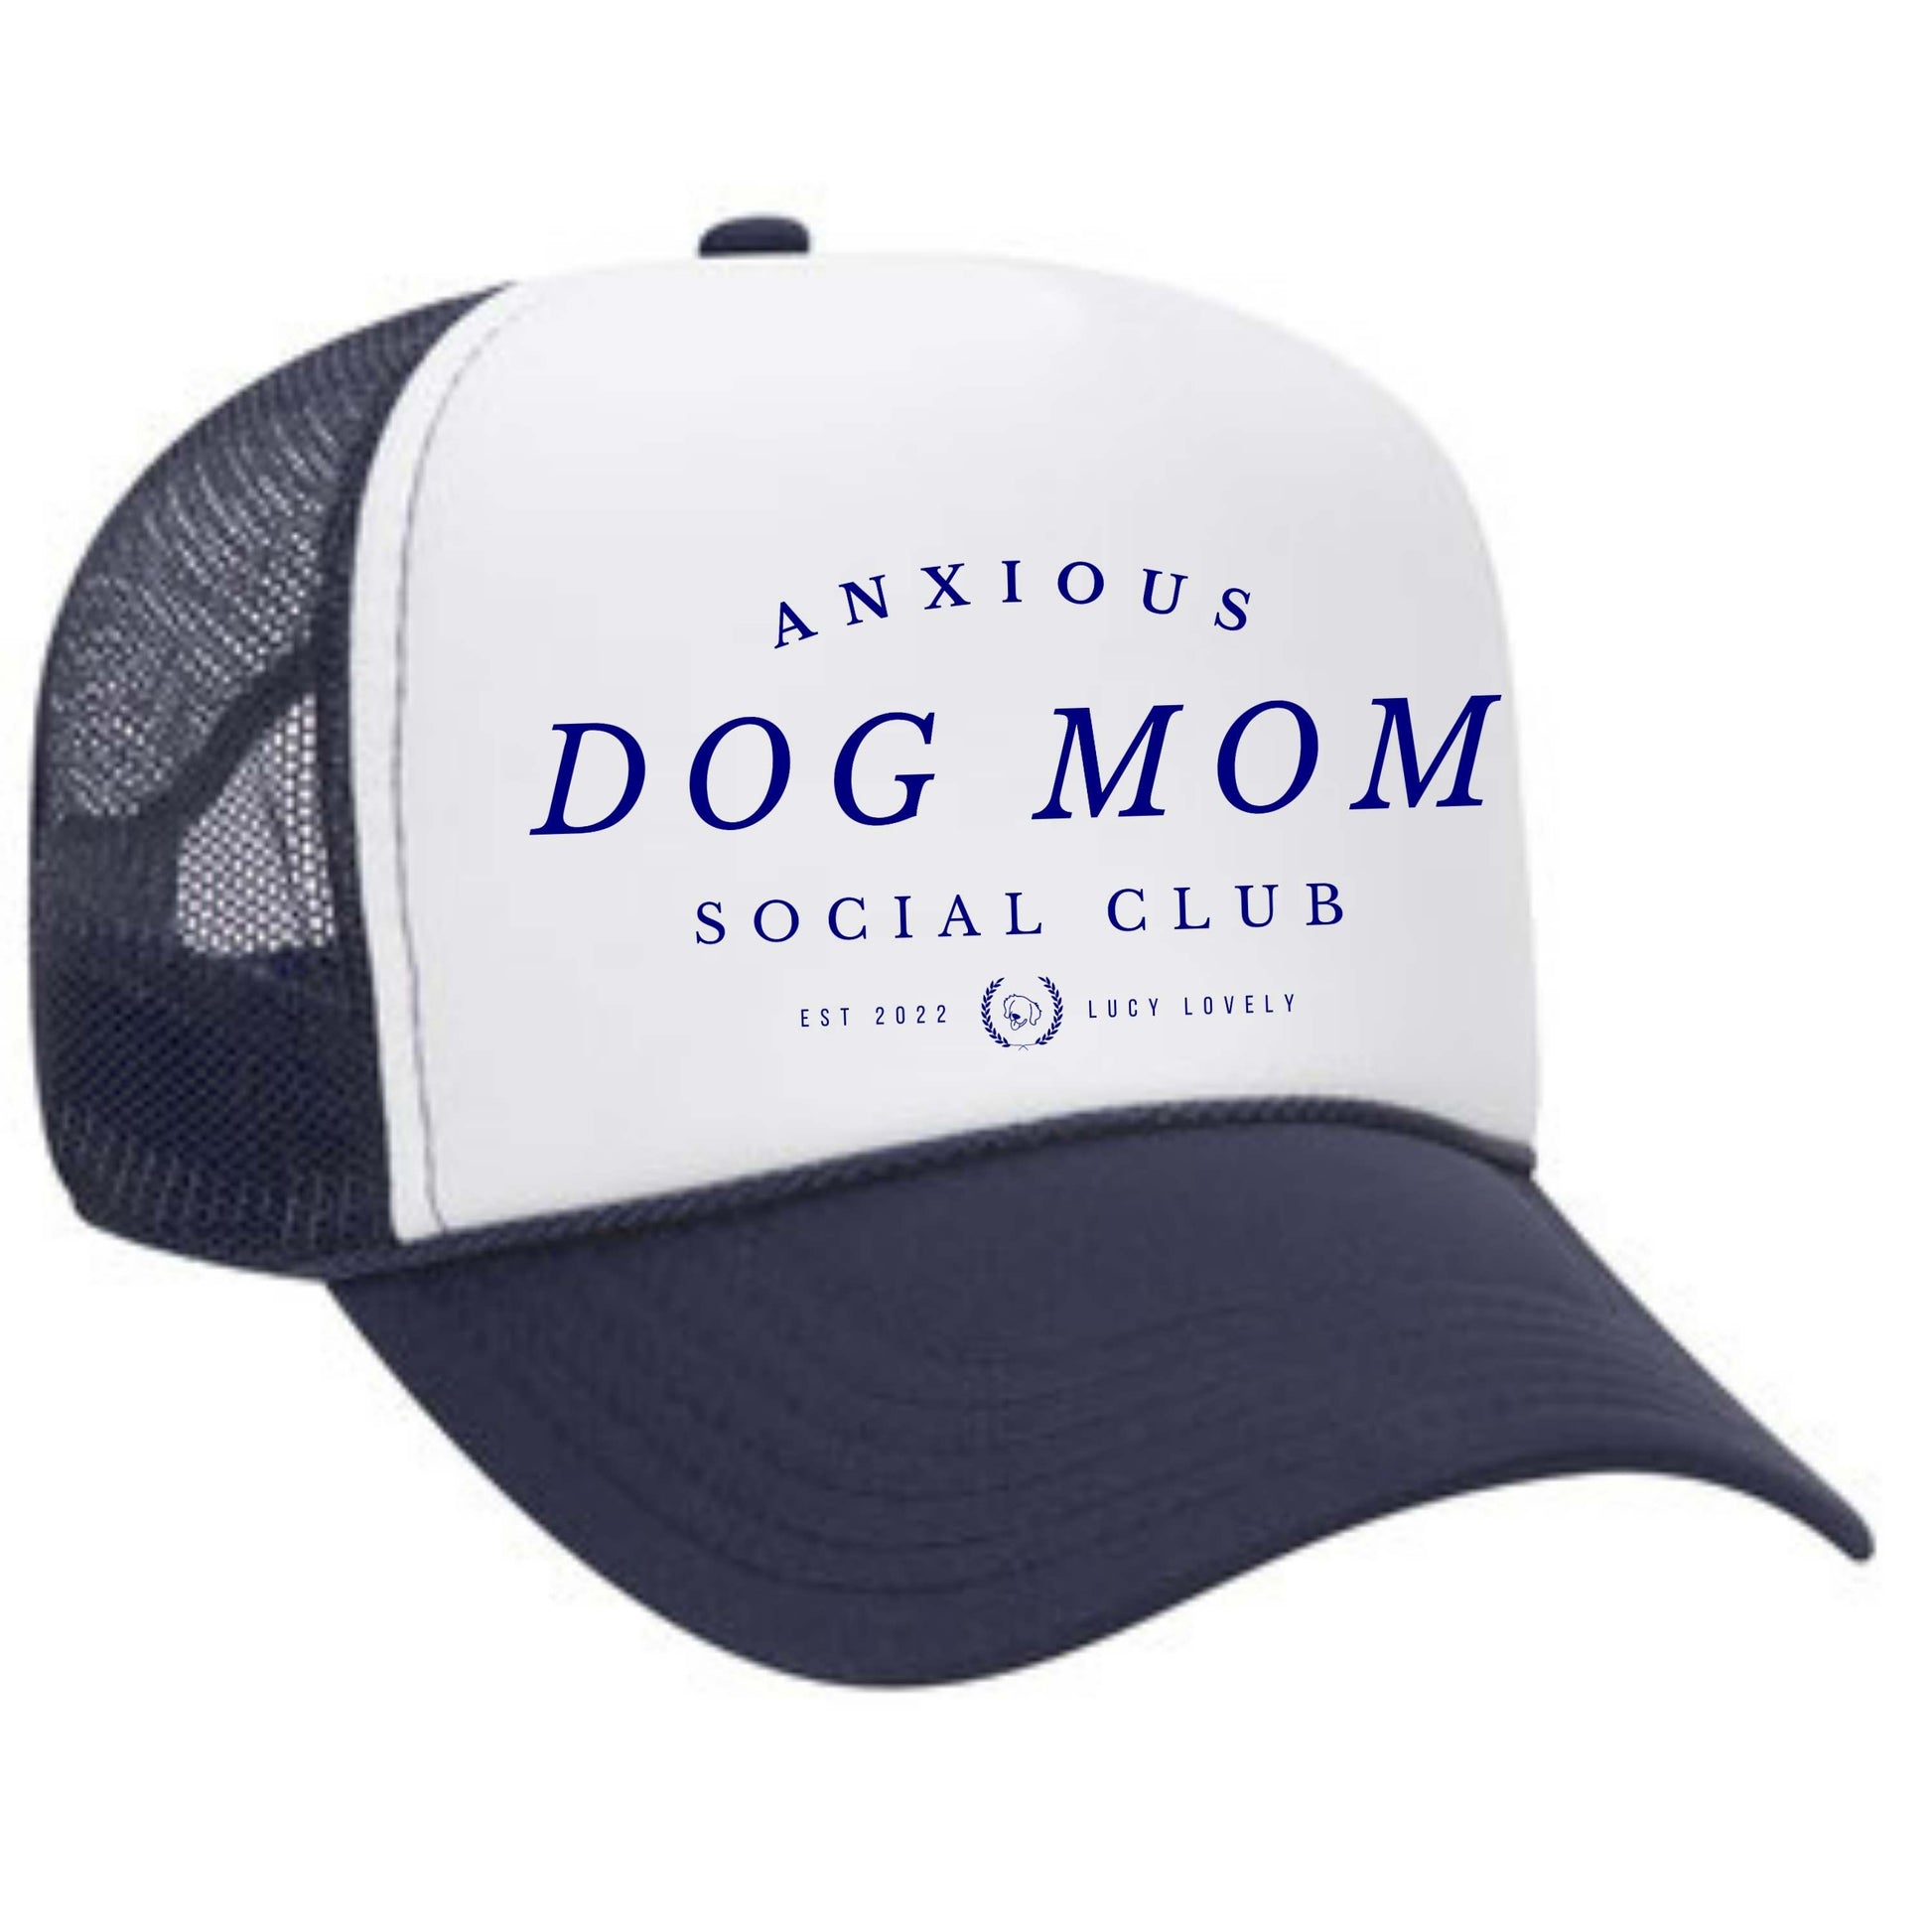 Anxious dog mom social club foam trucker hat, dog mom apparel, dog mom hat